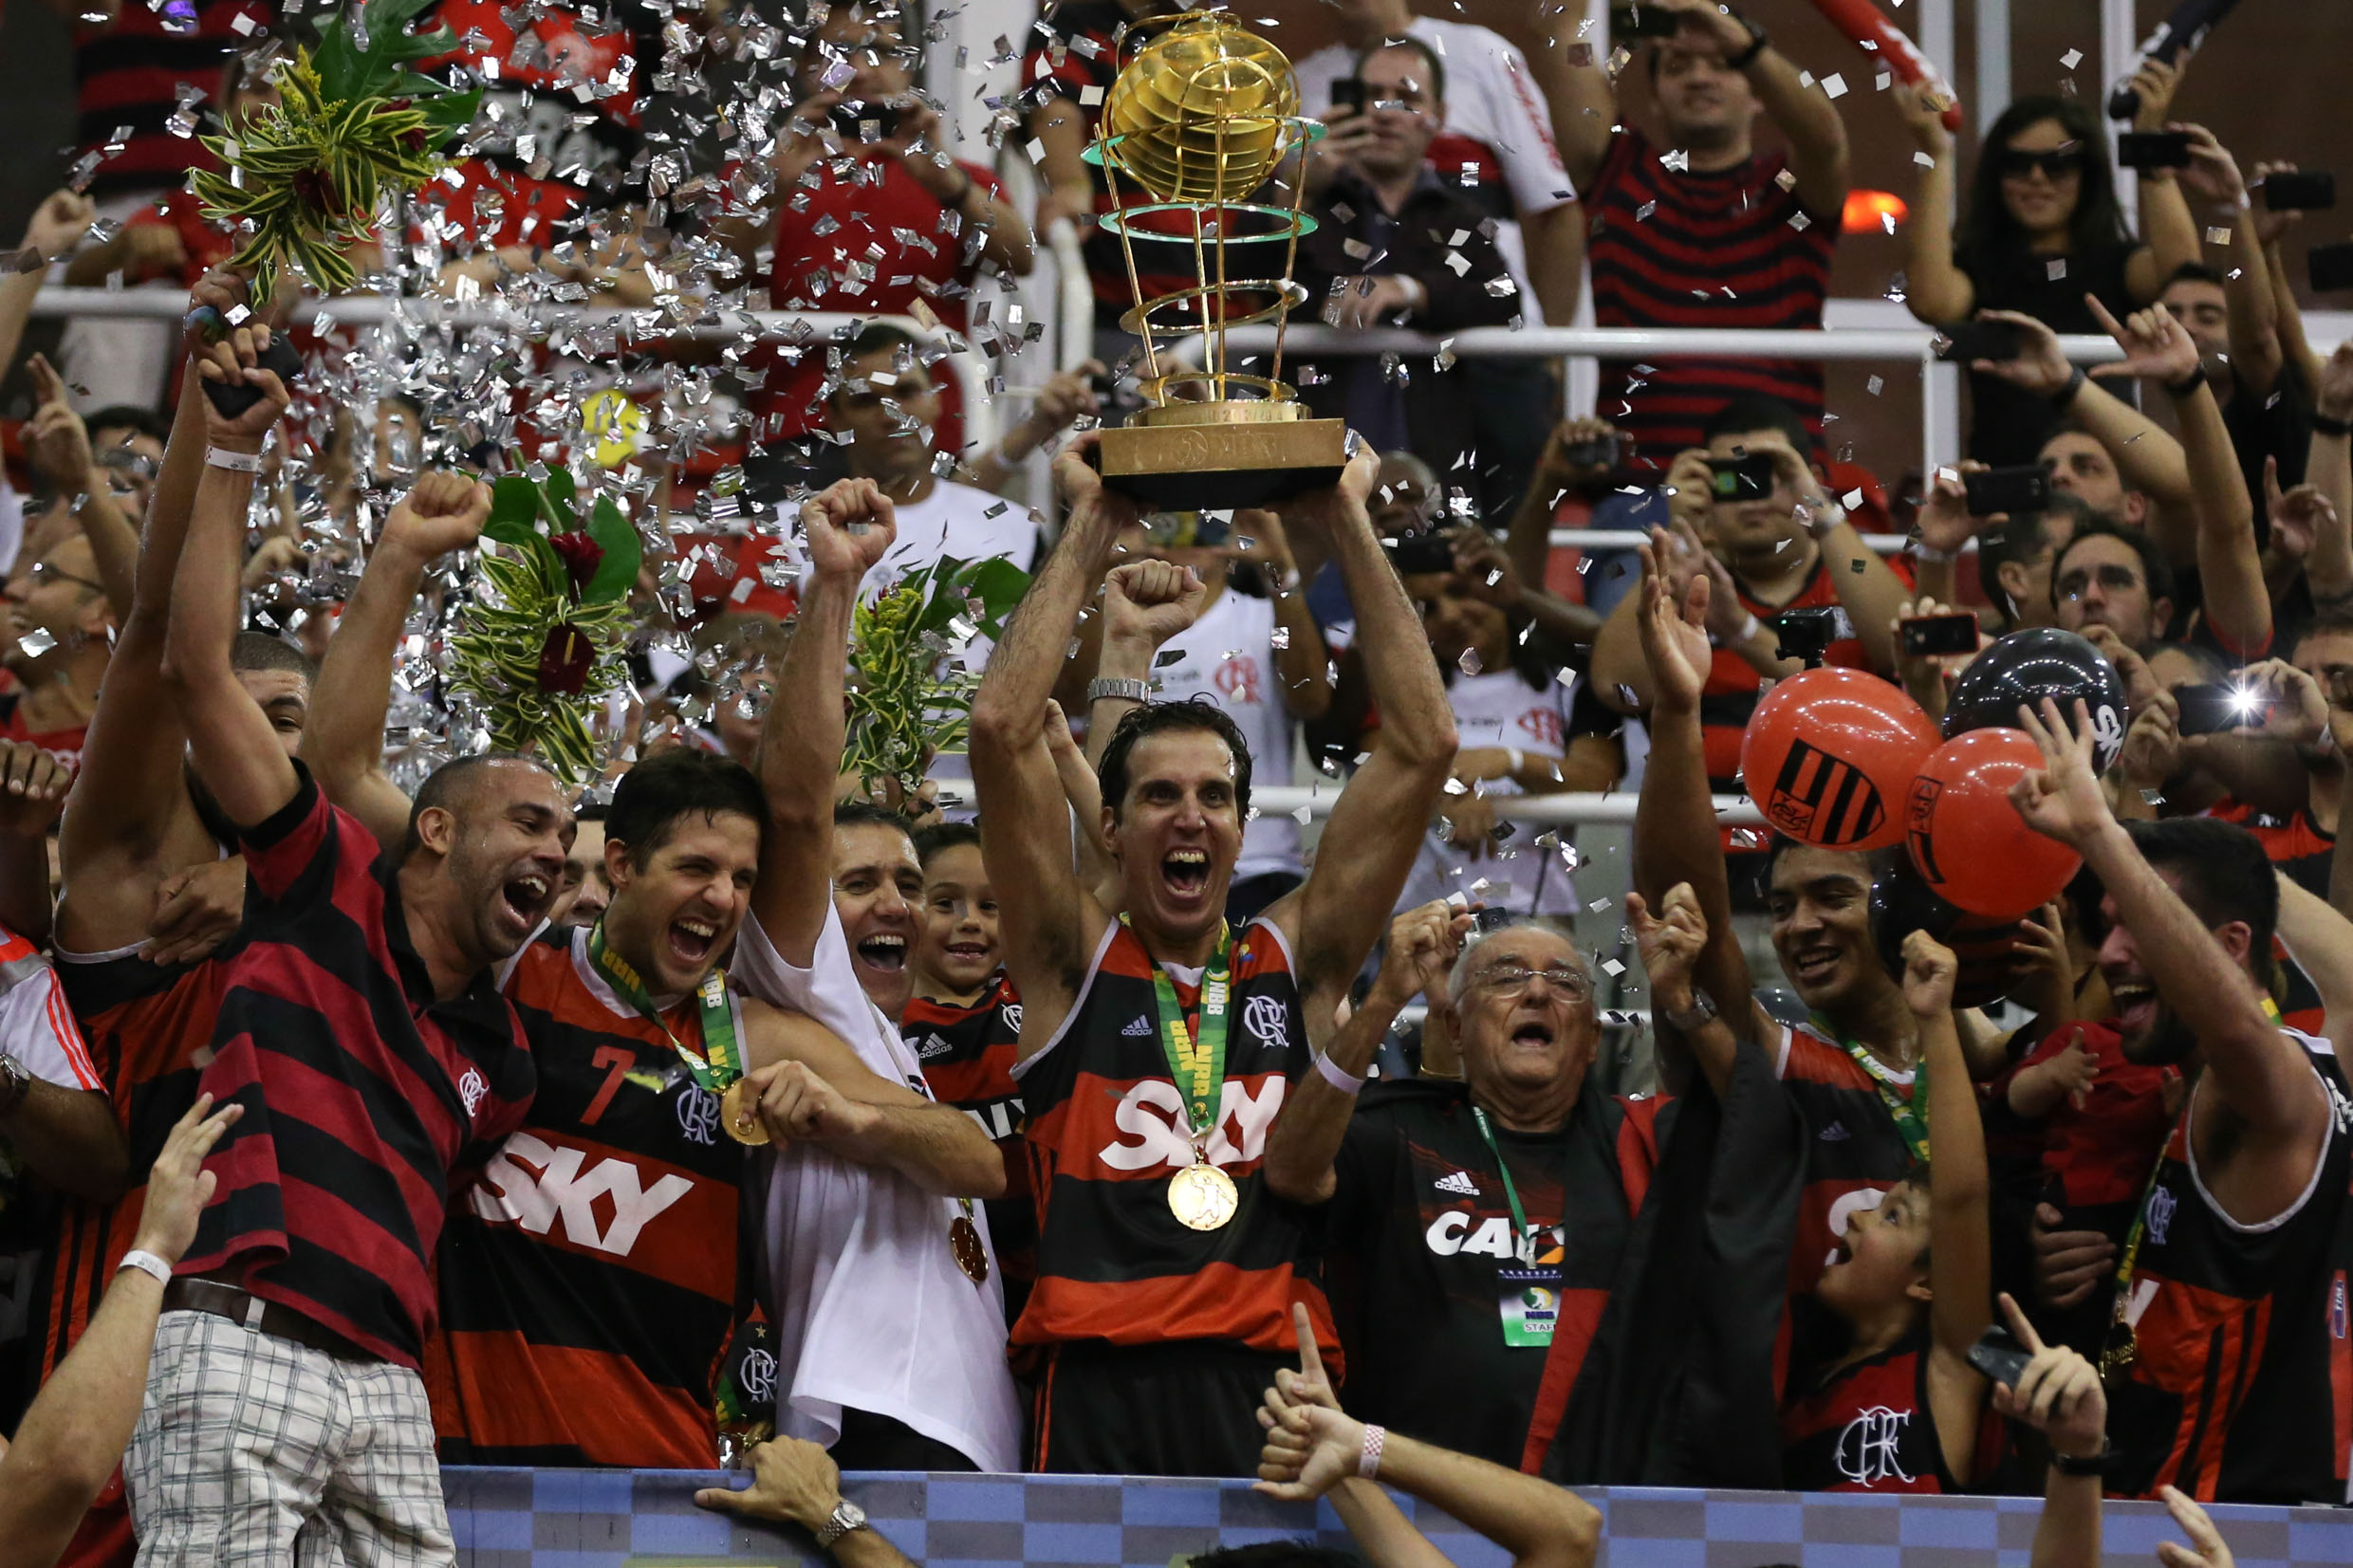 Com maior poder de decisão, Flamengo garantiu seu terceiro título do NBB, sendo o segundo de maneira consecutiva (Luiz Pires/LNB)